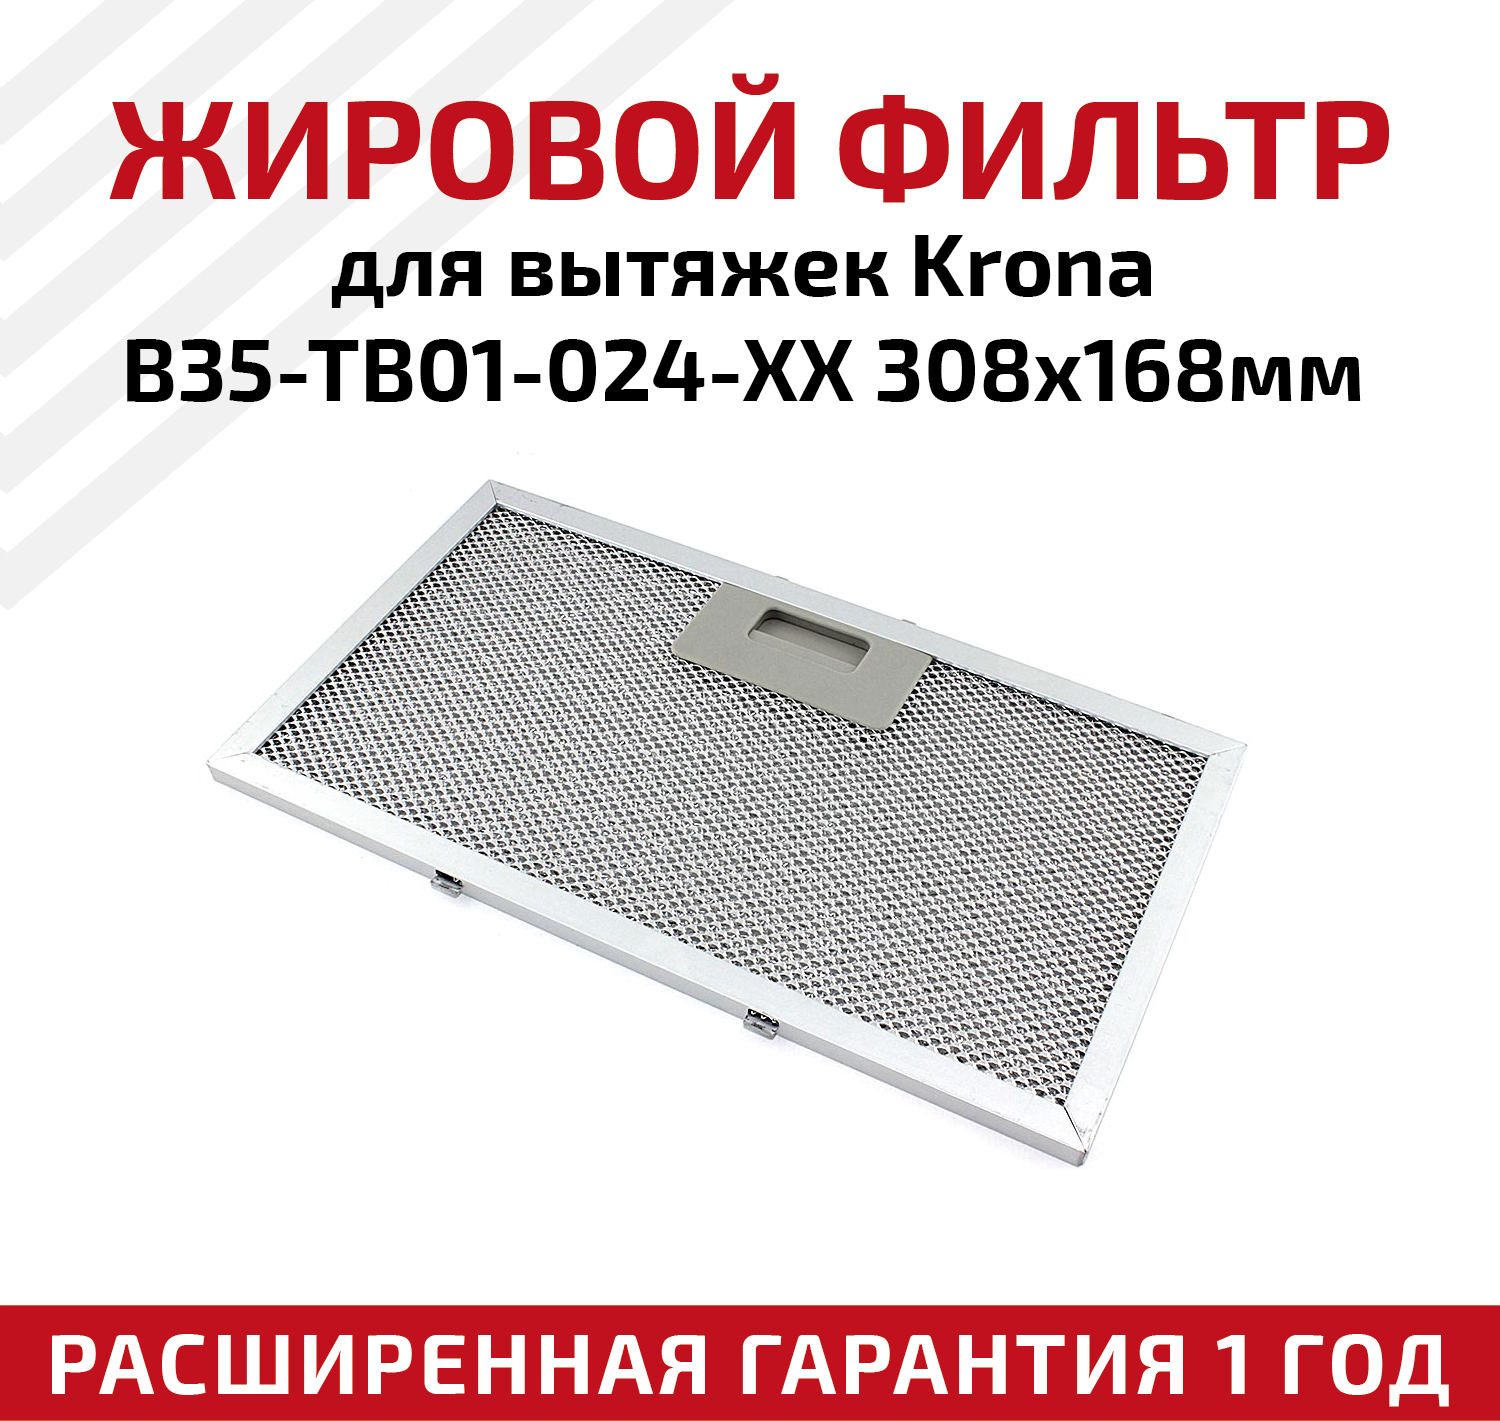 Жировой фильтр (кассета) алюминиевый (металлический) рамочный для вытяжек Krona B35-TB01-024-XX, многоразовый, 308х168мм